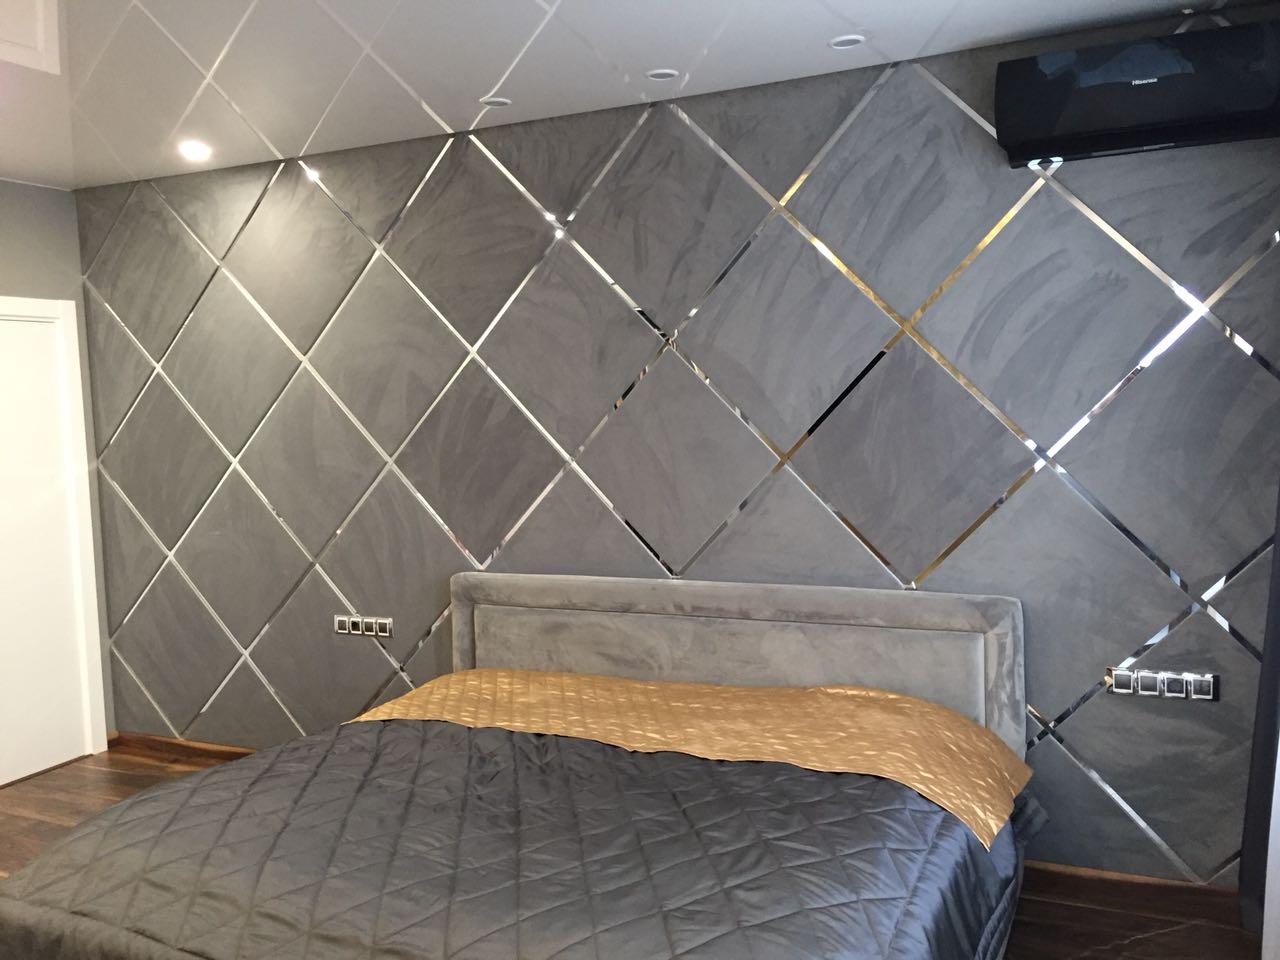 Проект стены спальни с диагональным расположением тканевых монохромных квадратных плит с хромированным обрамлением.